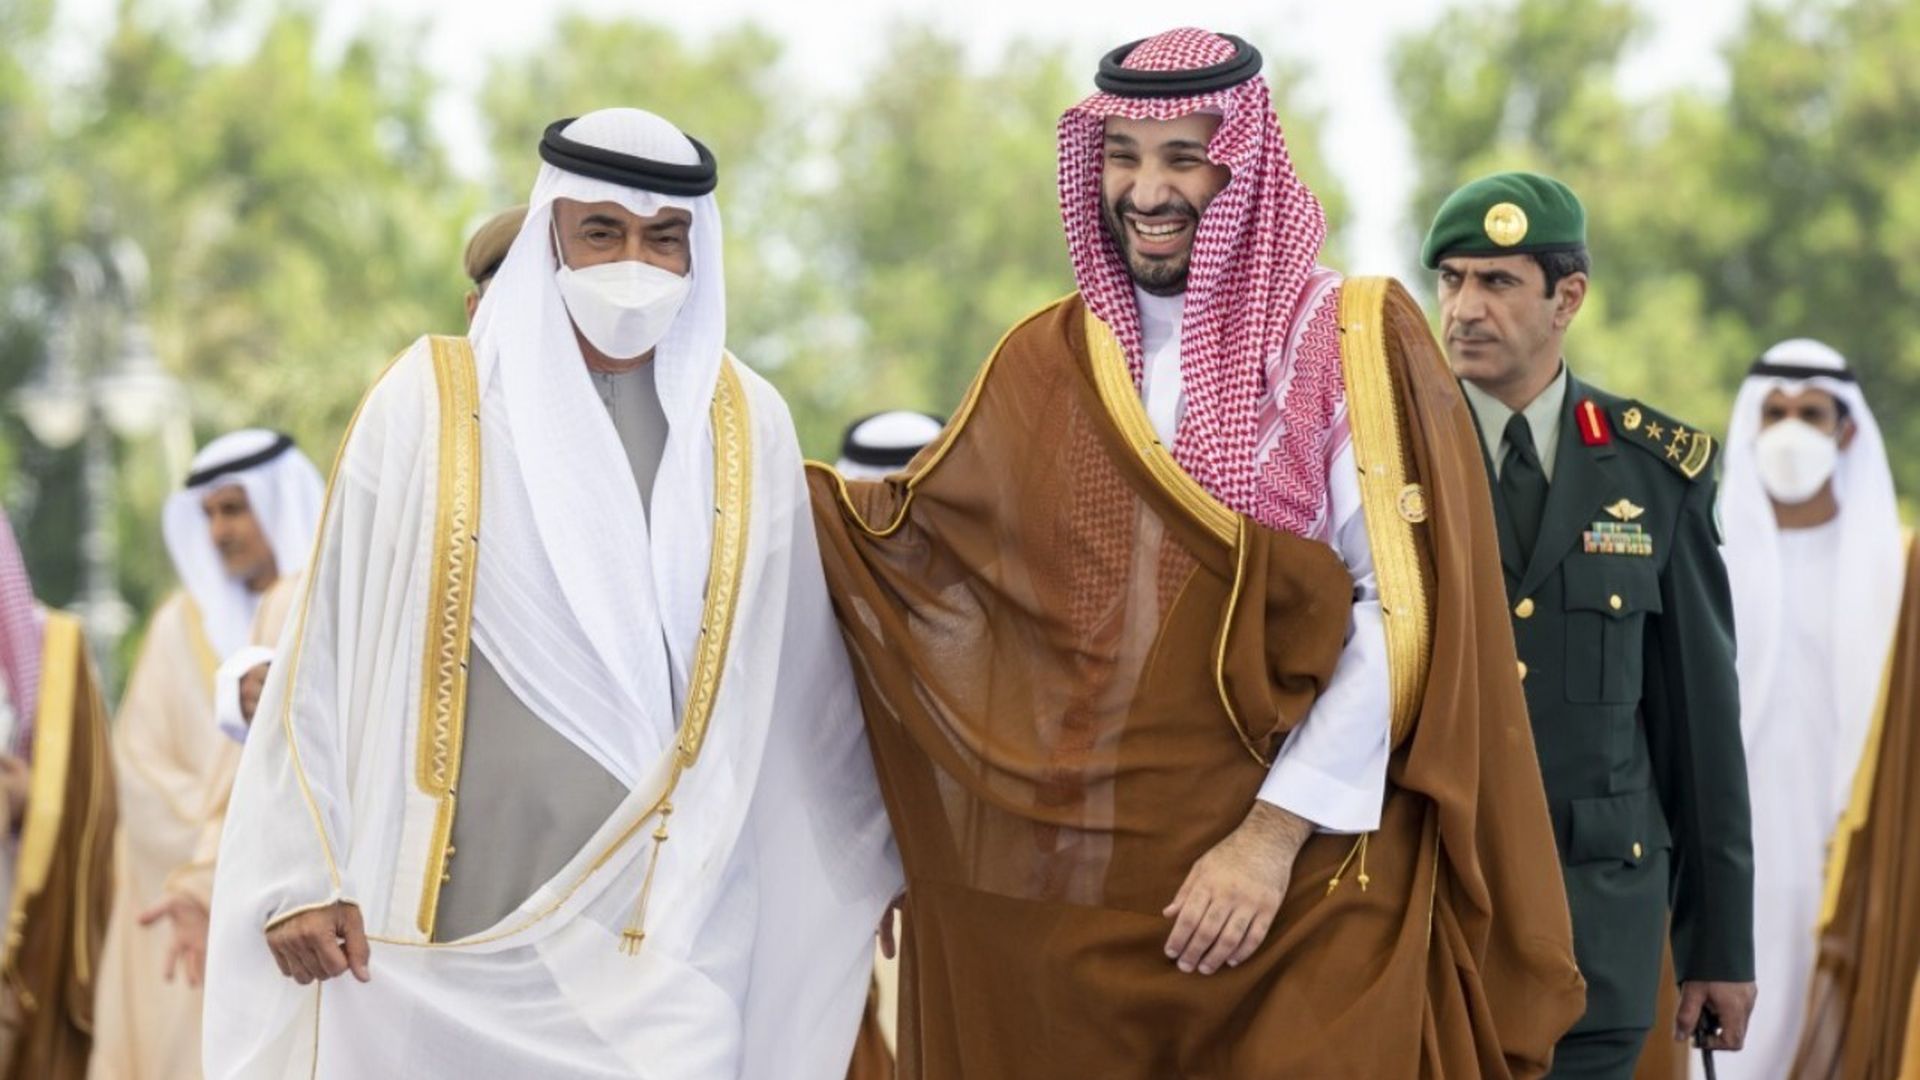 UAE's President Mohammed bin Zayed Al Nahyan meets Saudi Arabian Crown Prince Mohammed bin Salman  in Jeddah on July 16.